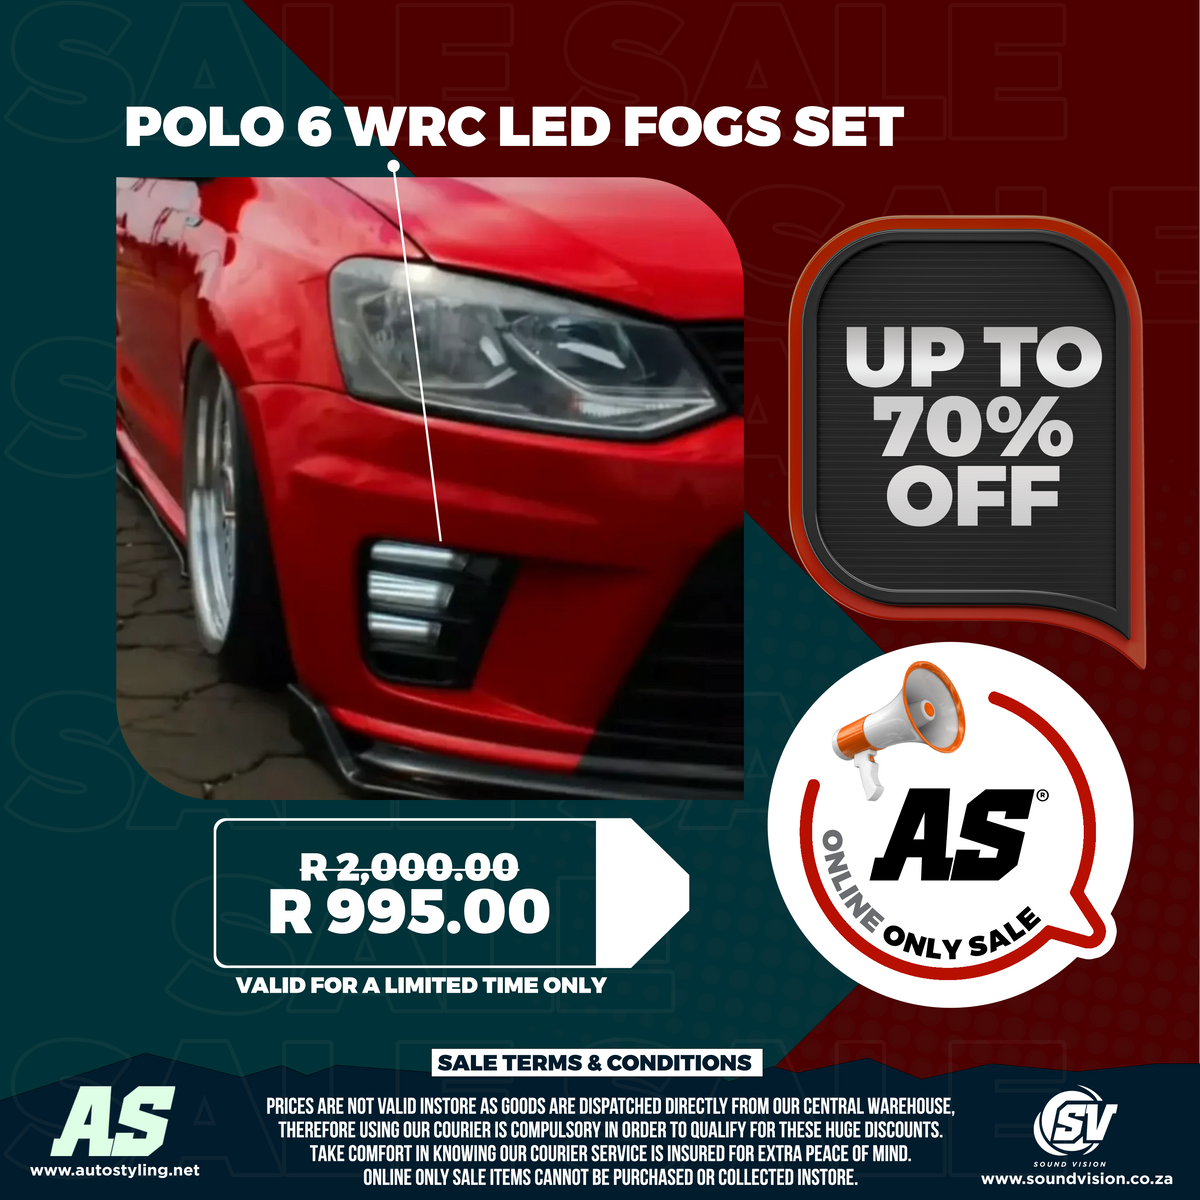 POLO 6 WRC LED FOGS SET